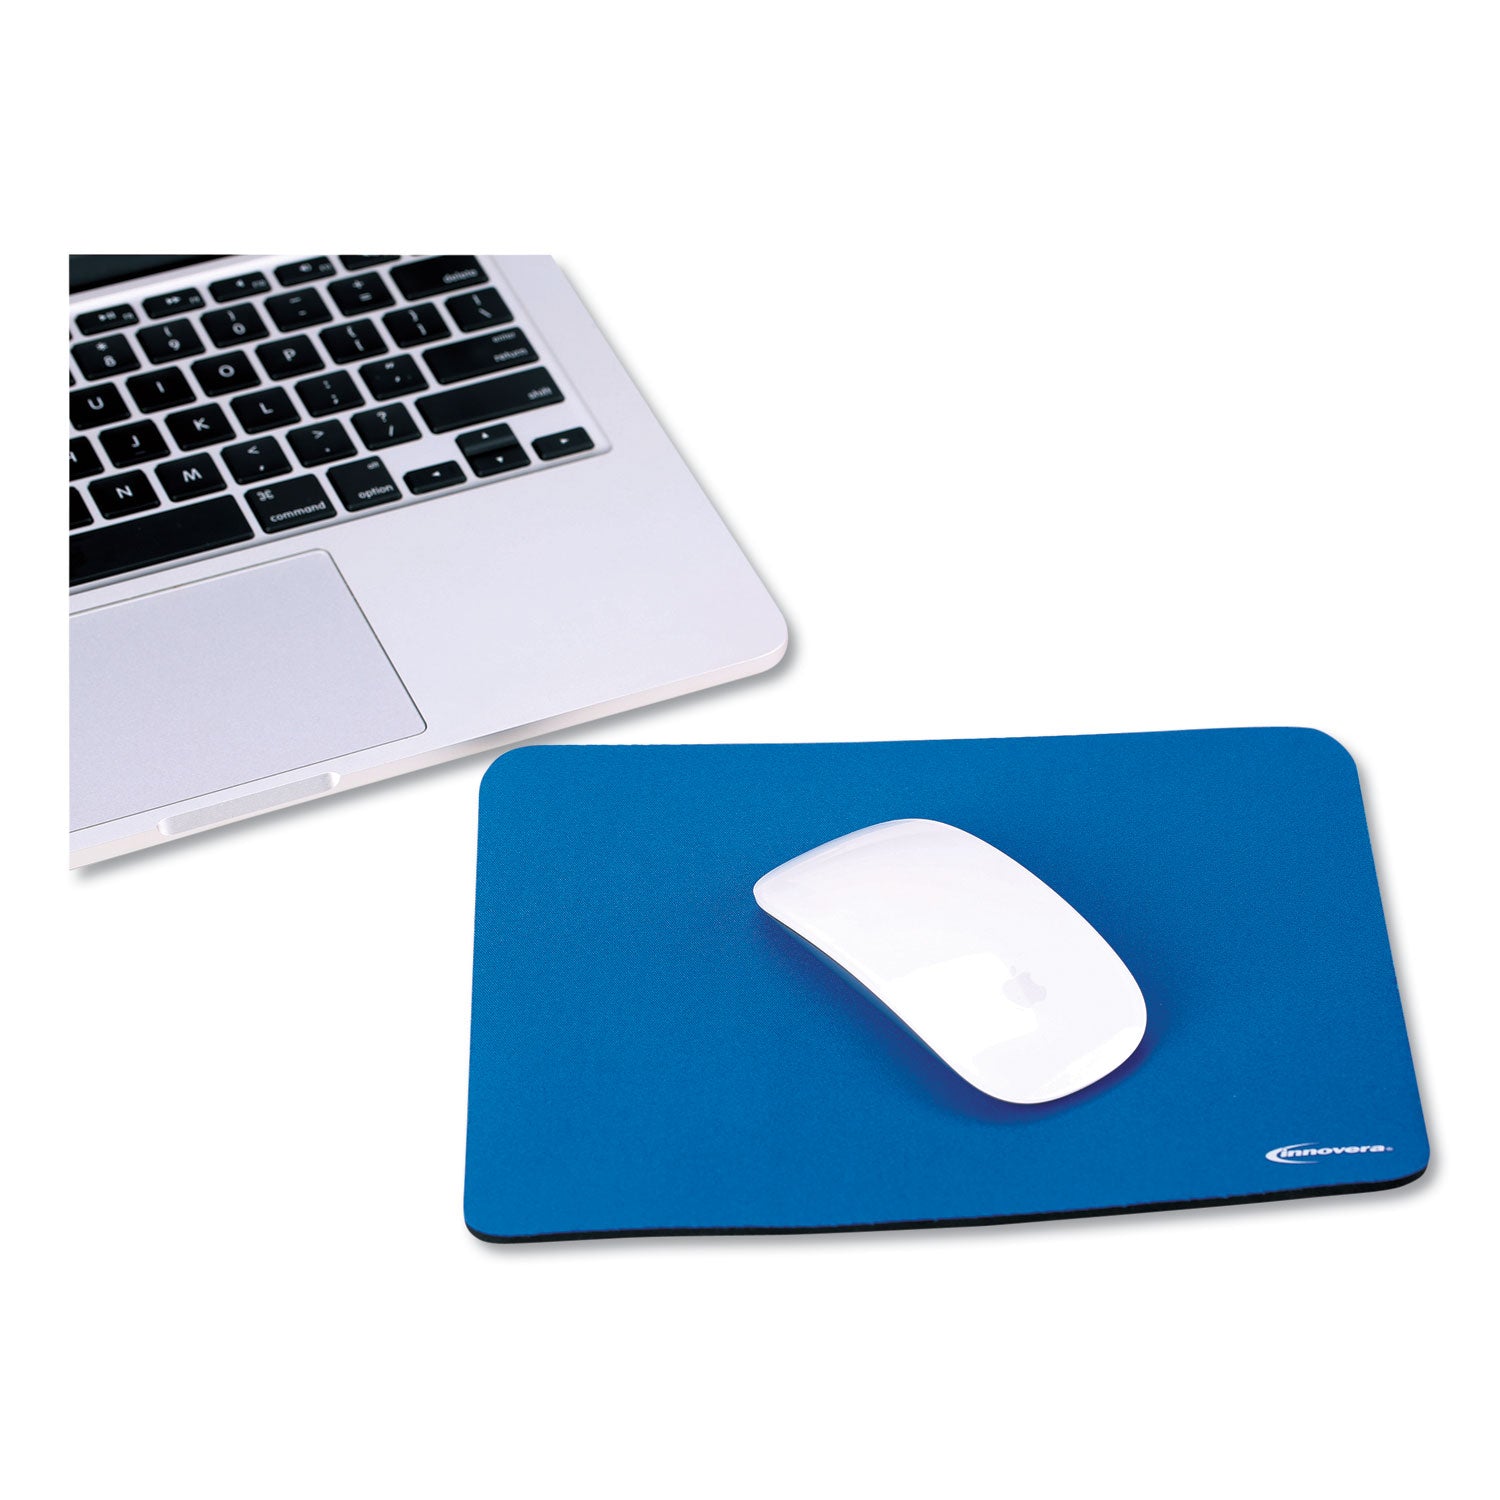 Mouse Pad, 9 x 7.5, Blue - 